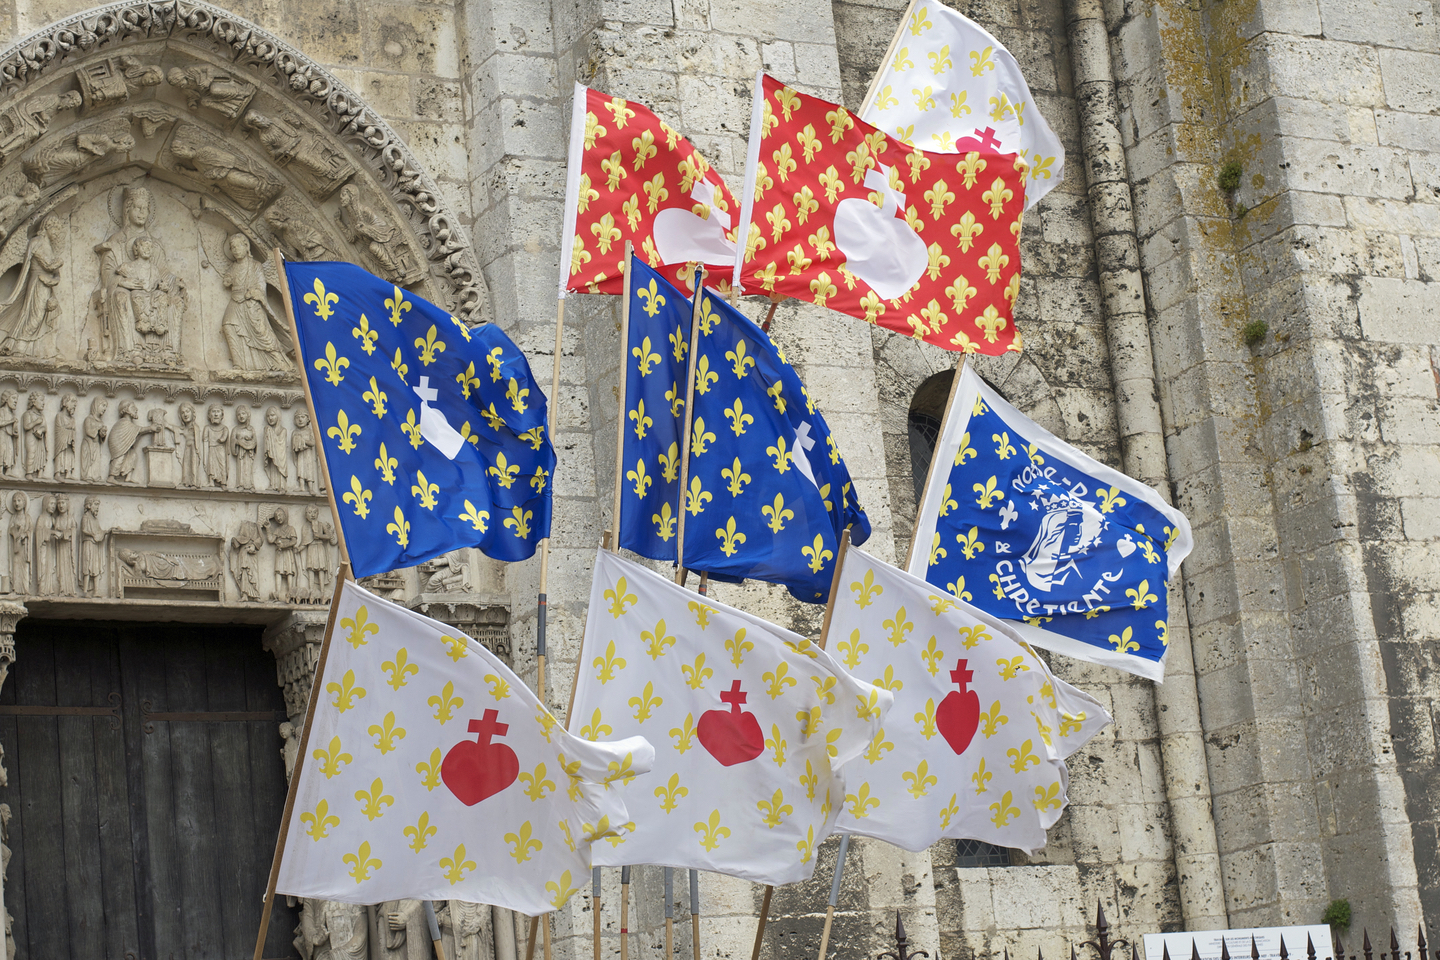 Bannières devant la cathédrale de Chartres